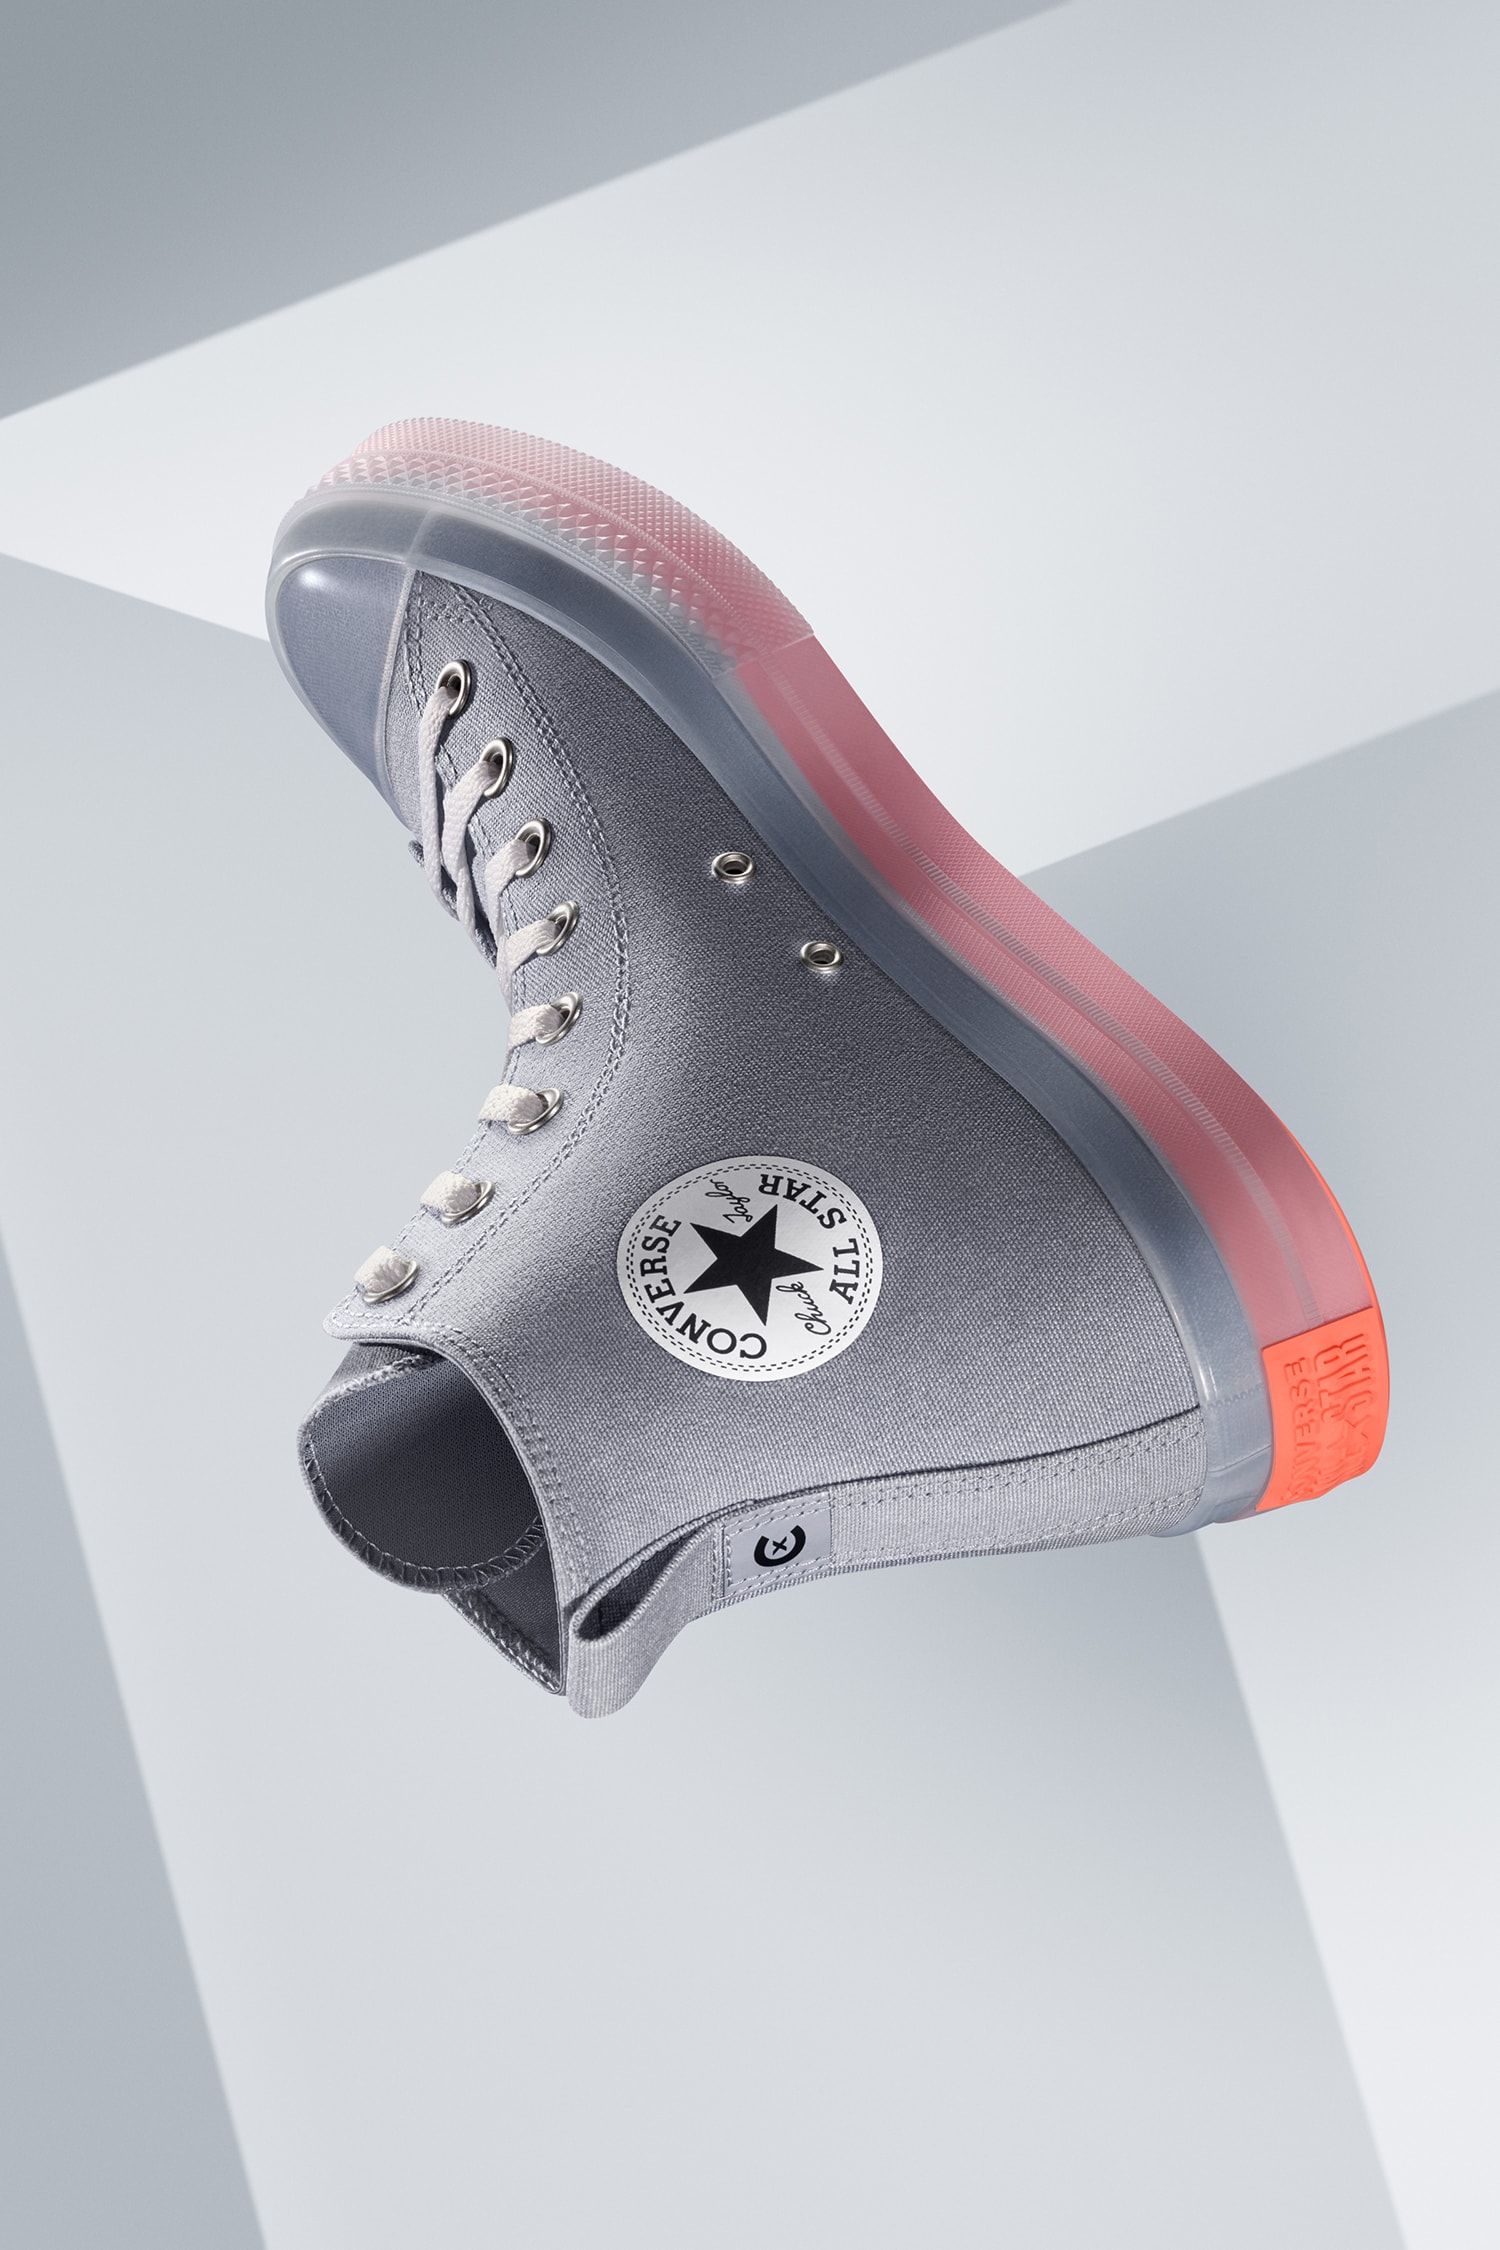 Converse 再度为 CX 系列推出全新鞋款